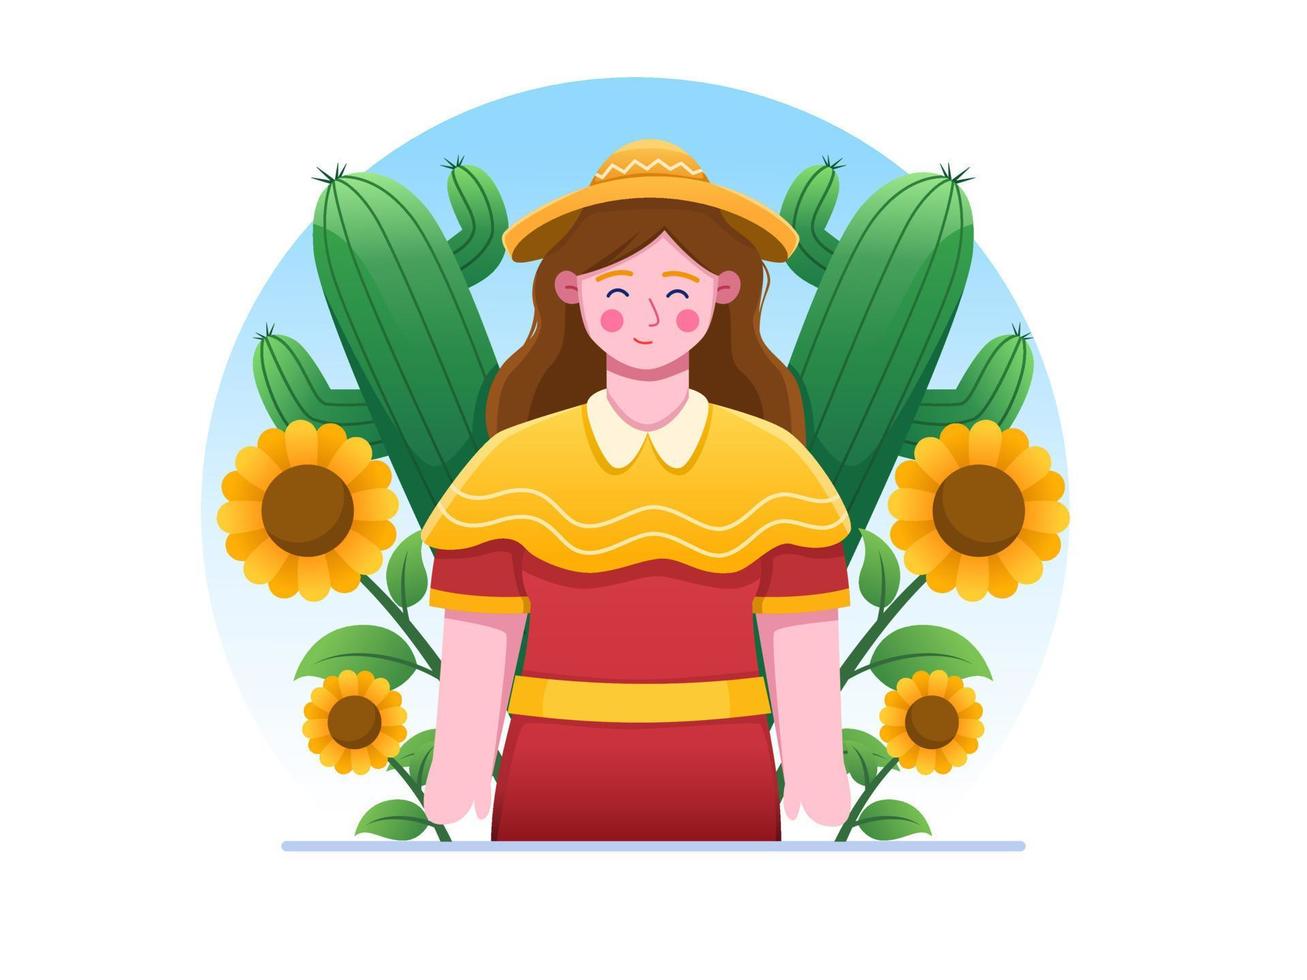 festa junina cartoon vectorillustratie met gelukkige vrouw draag sombrero en jurk, met prachtige zonnebloem en cactus achtergrond. kan worden gebruikt voor ansichtkaarten, wenskaarten, afdrukken, sjabloon, web, enz. vector